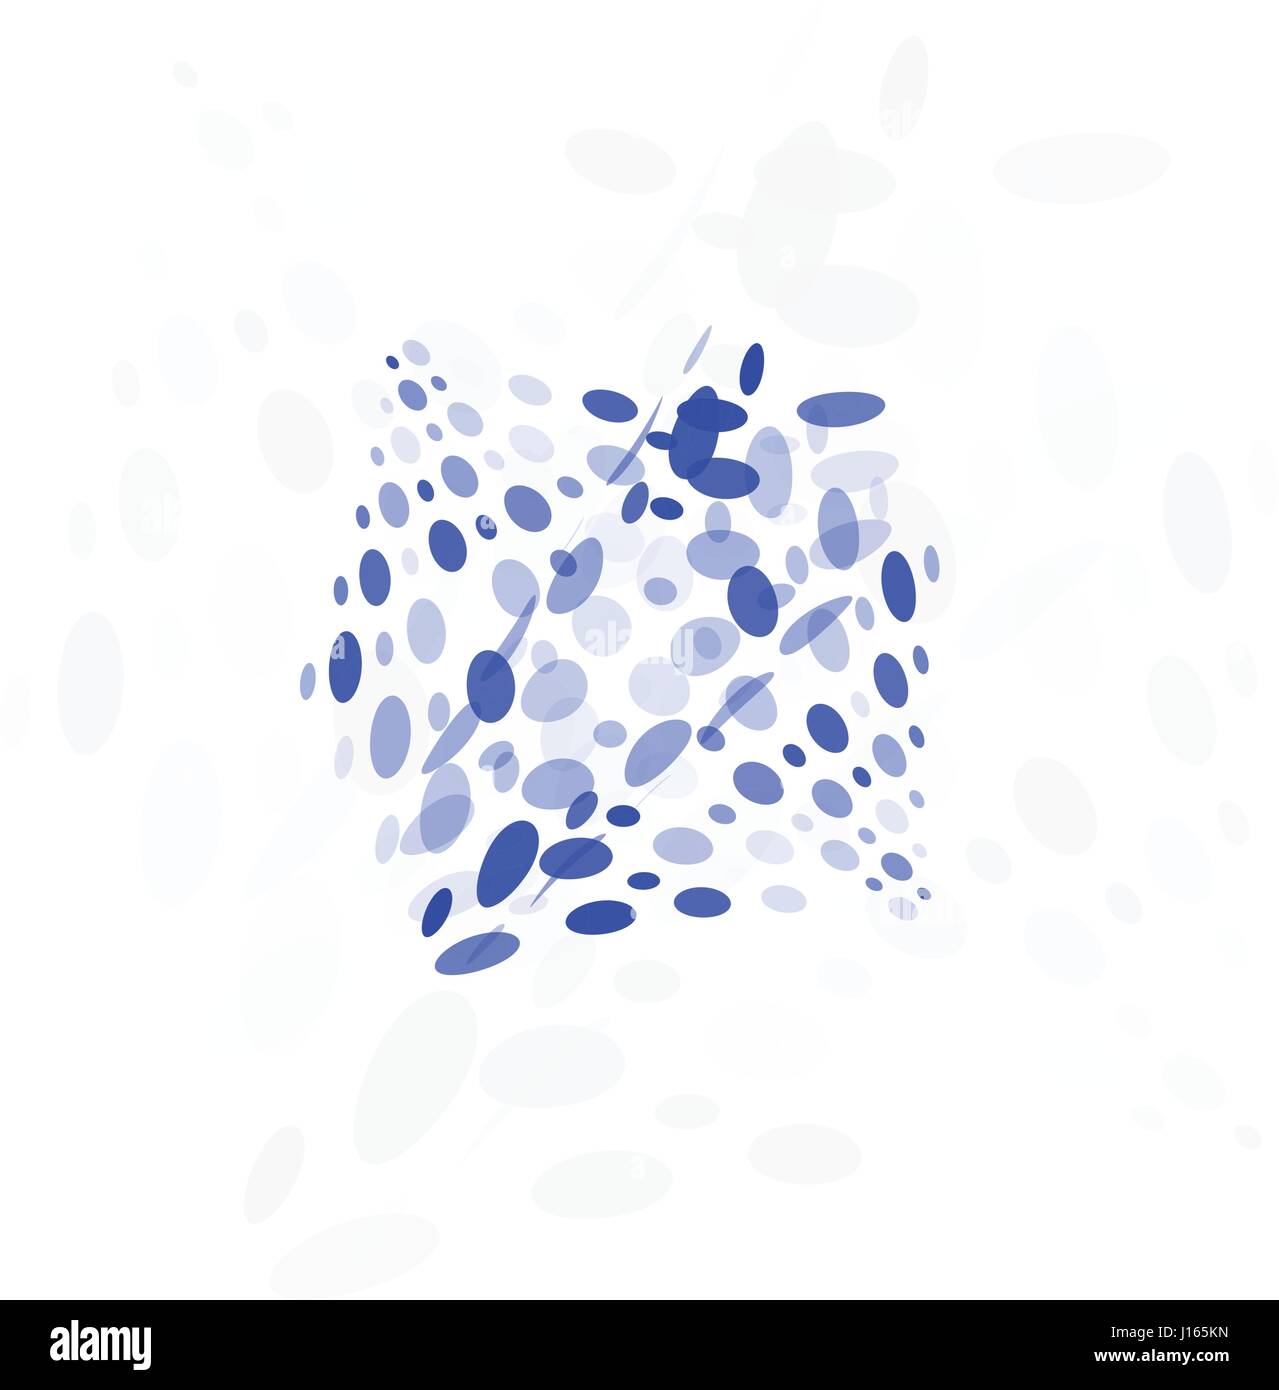 Résumé isolés logo coloré forme inhabituelle de bulles, en pointillé sur fond noir logo vector illustration Illustration de Vecteur